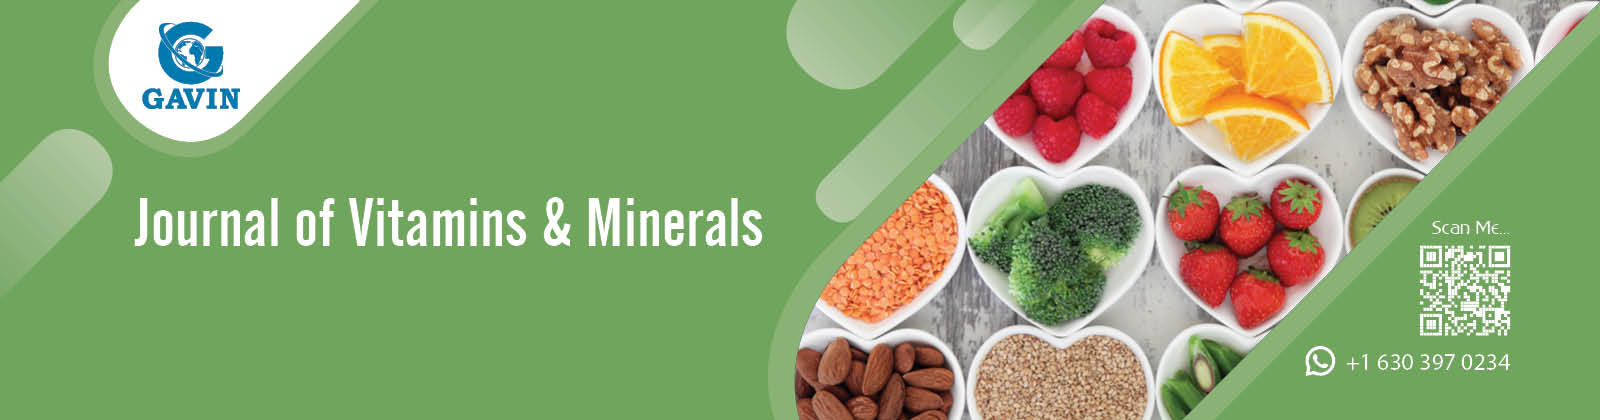 Journal of Vitamins & Minerals